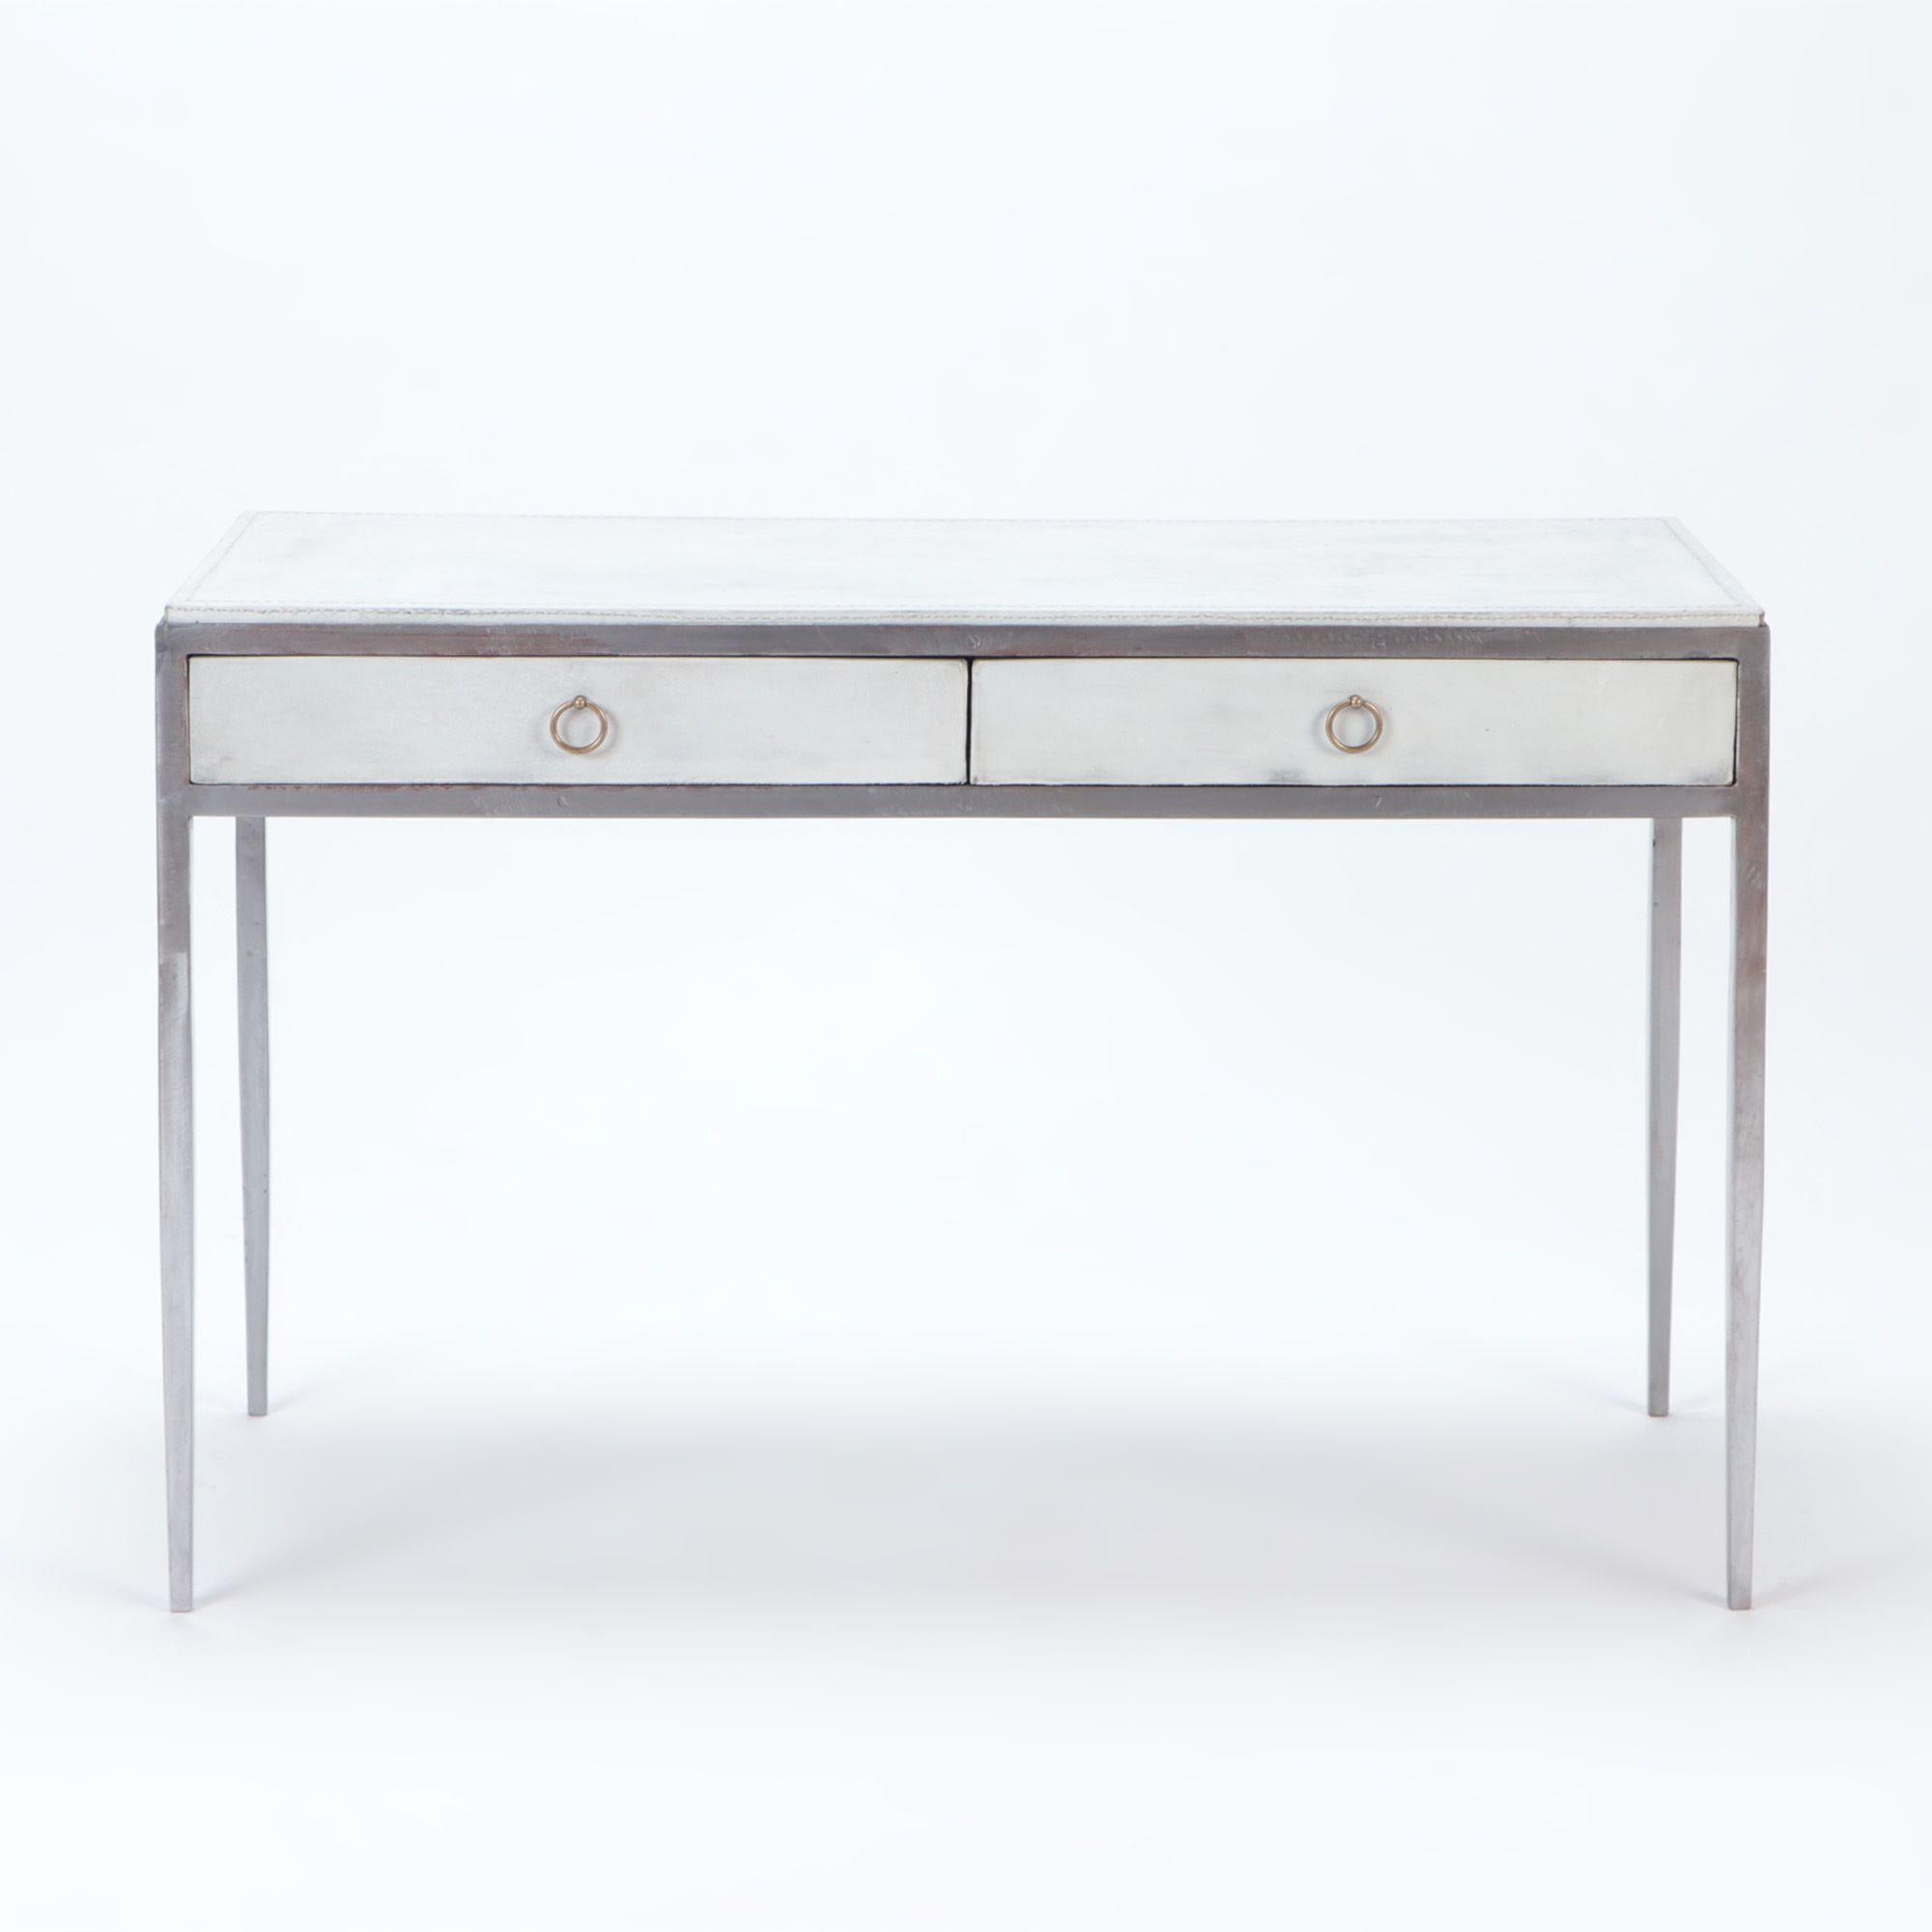 Ein Schreibtisch aus weißem Leder und poliertem Eisen, nach dem Vorbild von Jean-Michel Frank. Zwei Schubladen mit Messinggriffen. Zeitgenössisch.